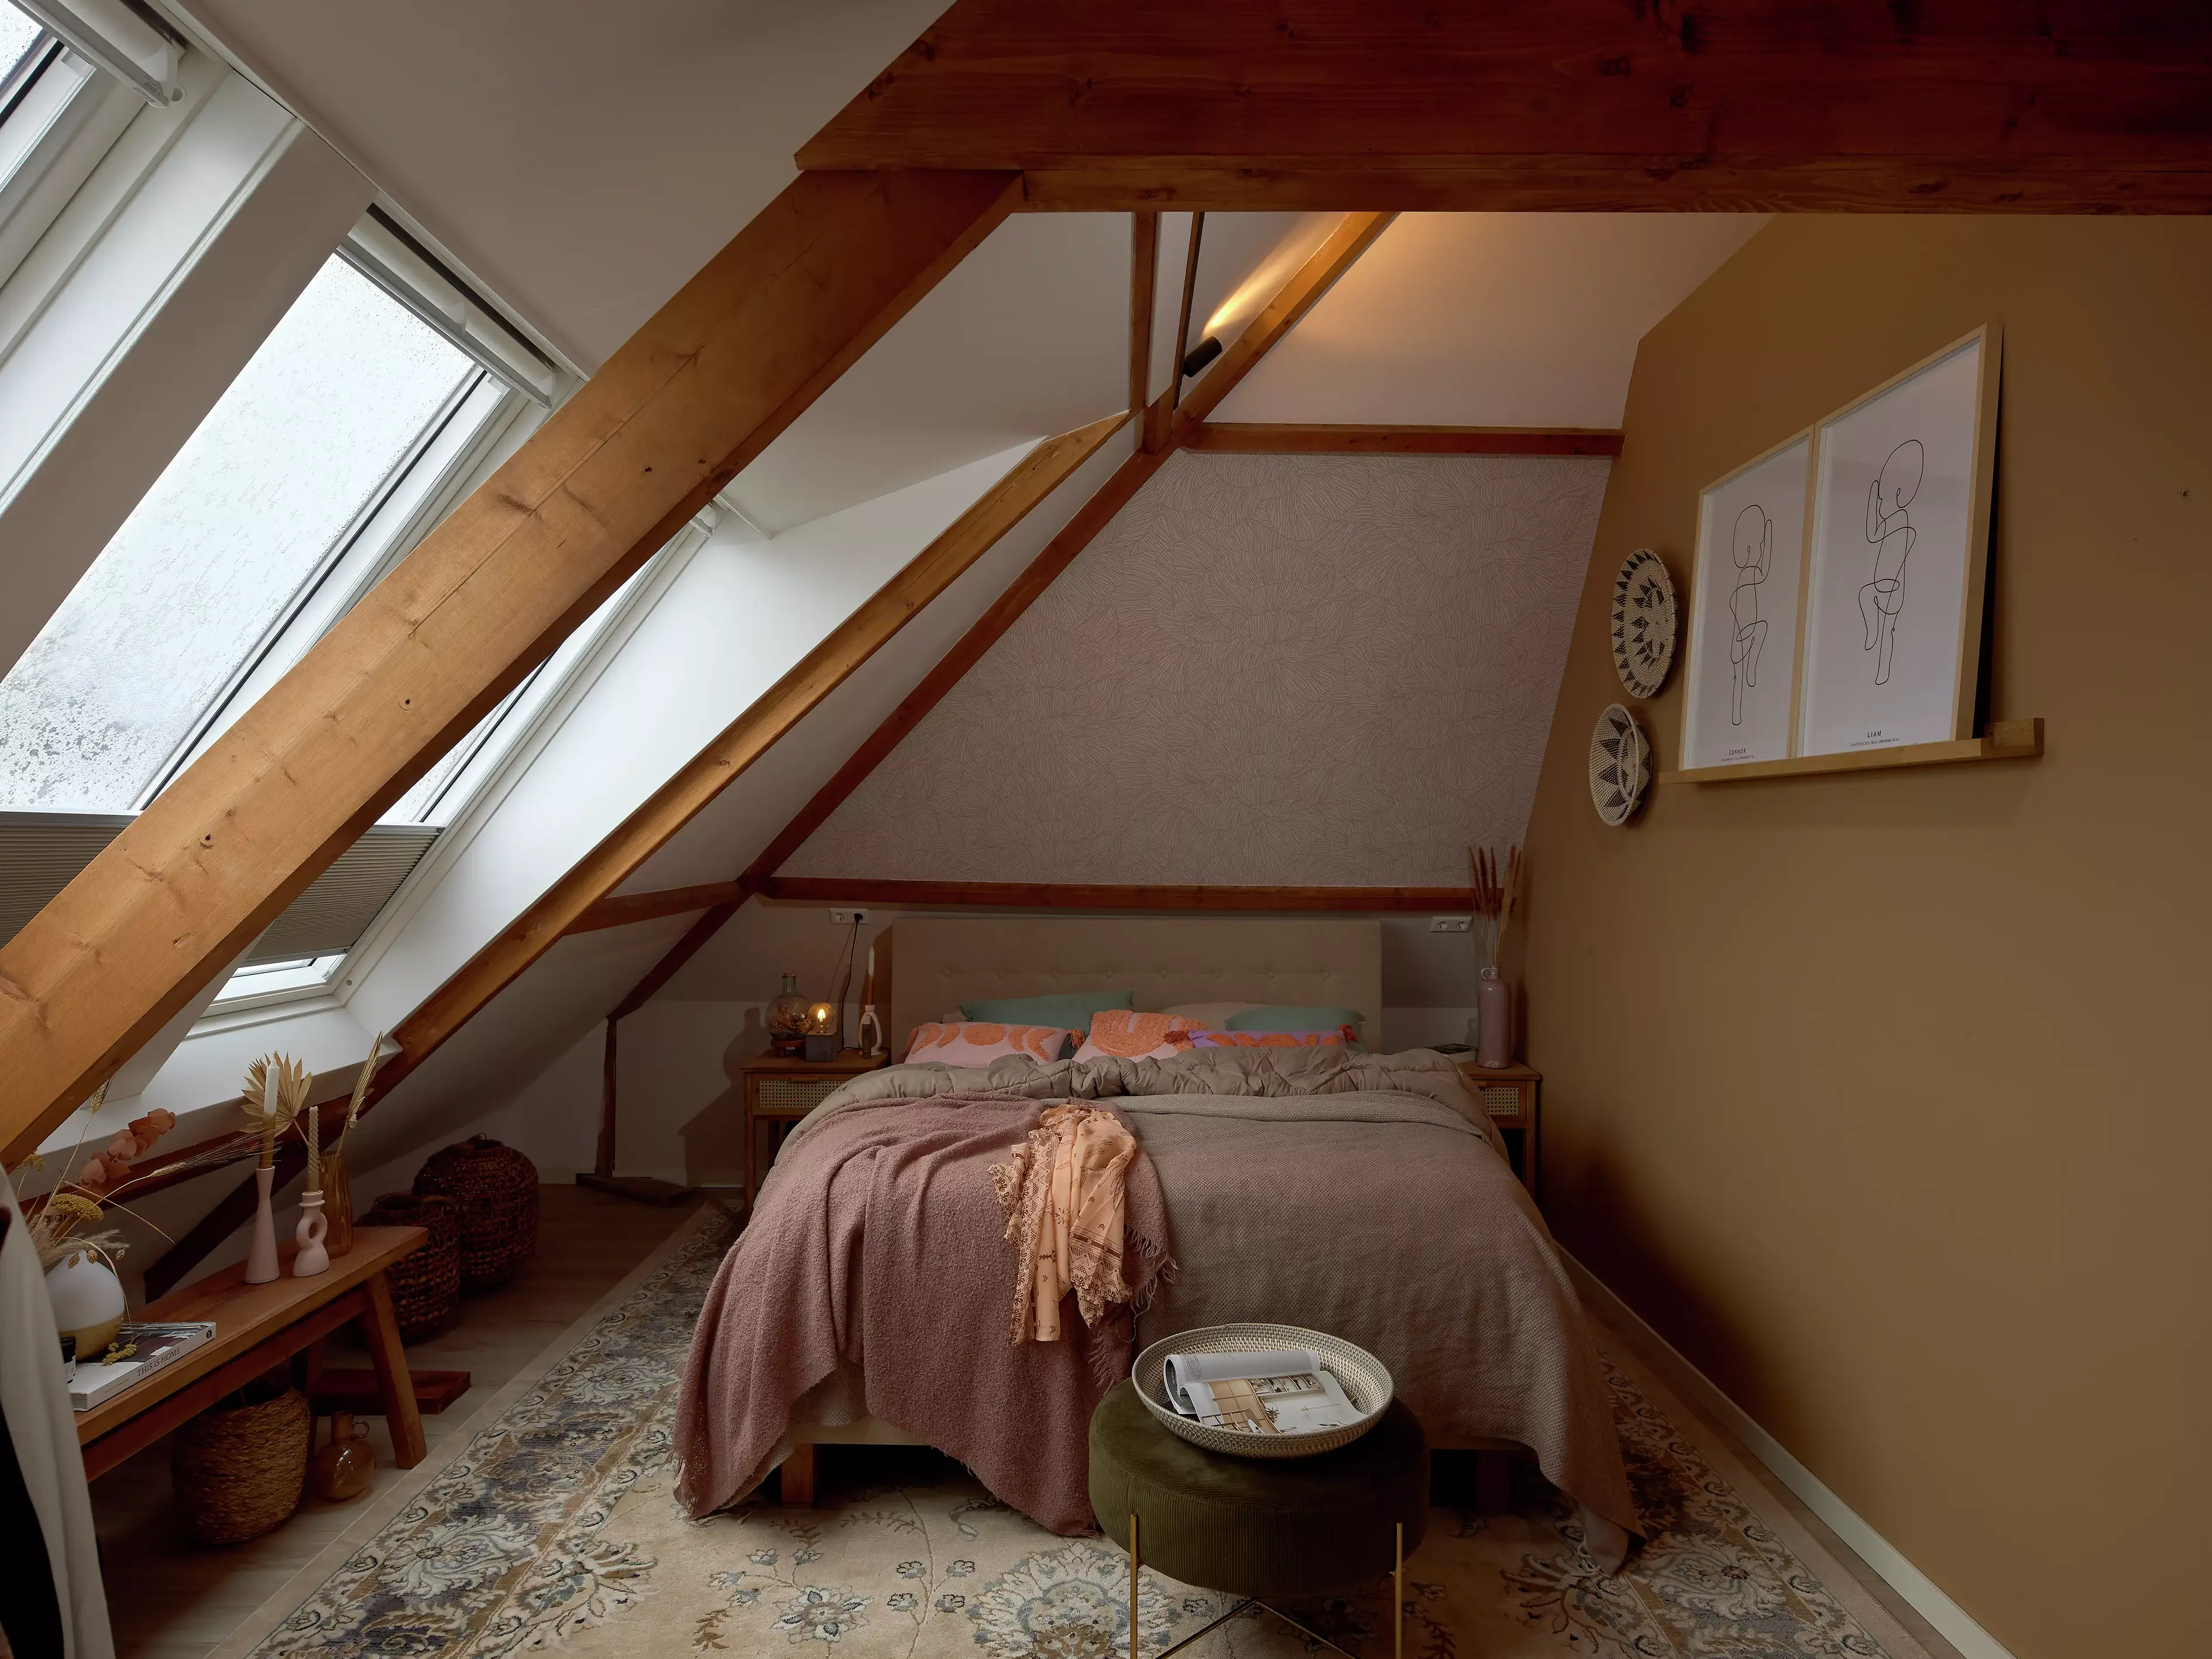 Chambre de comble avec fenêtre de toit VELUX, poutres en bois, et literie rose.